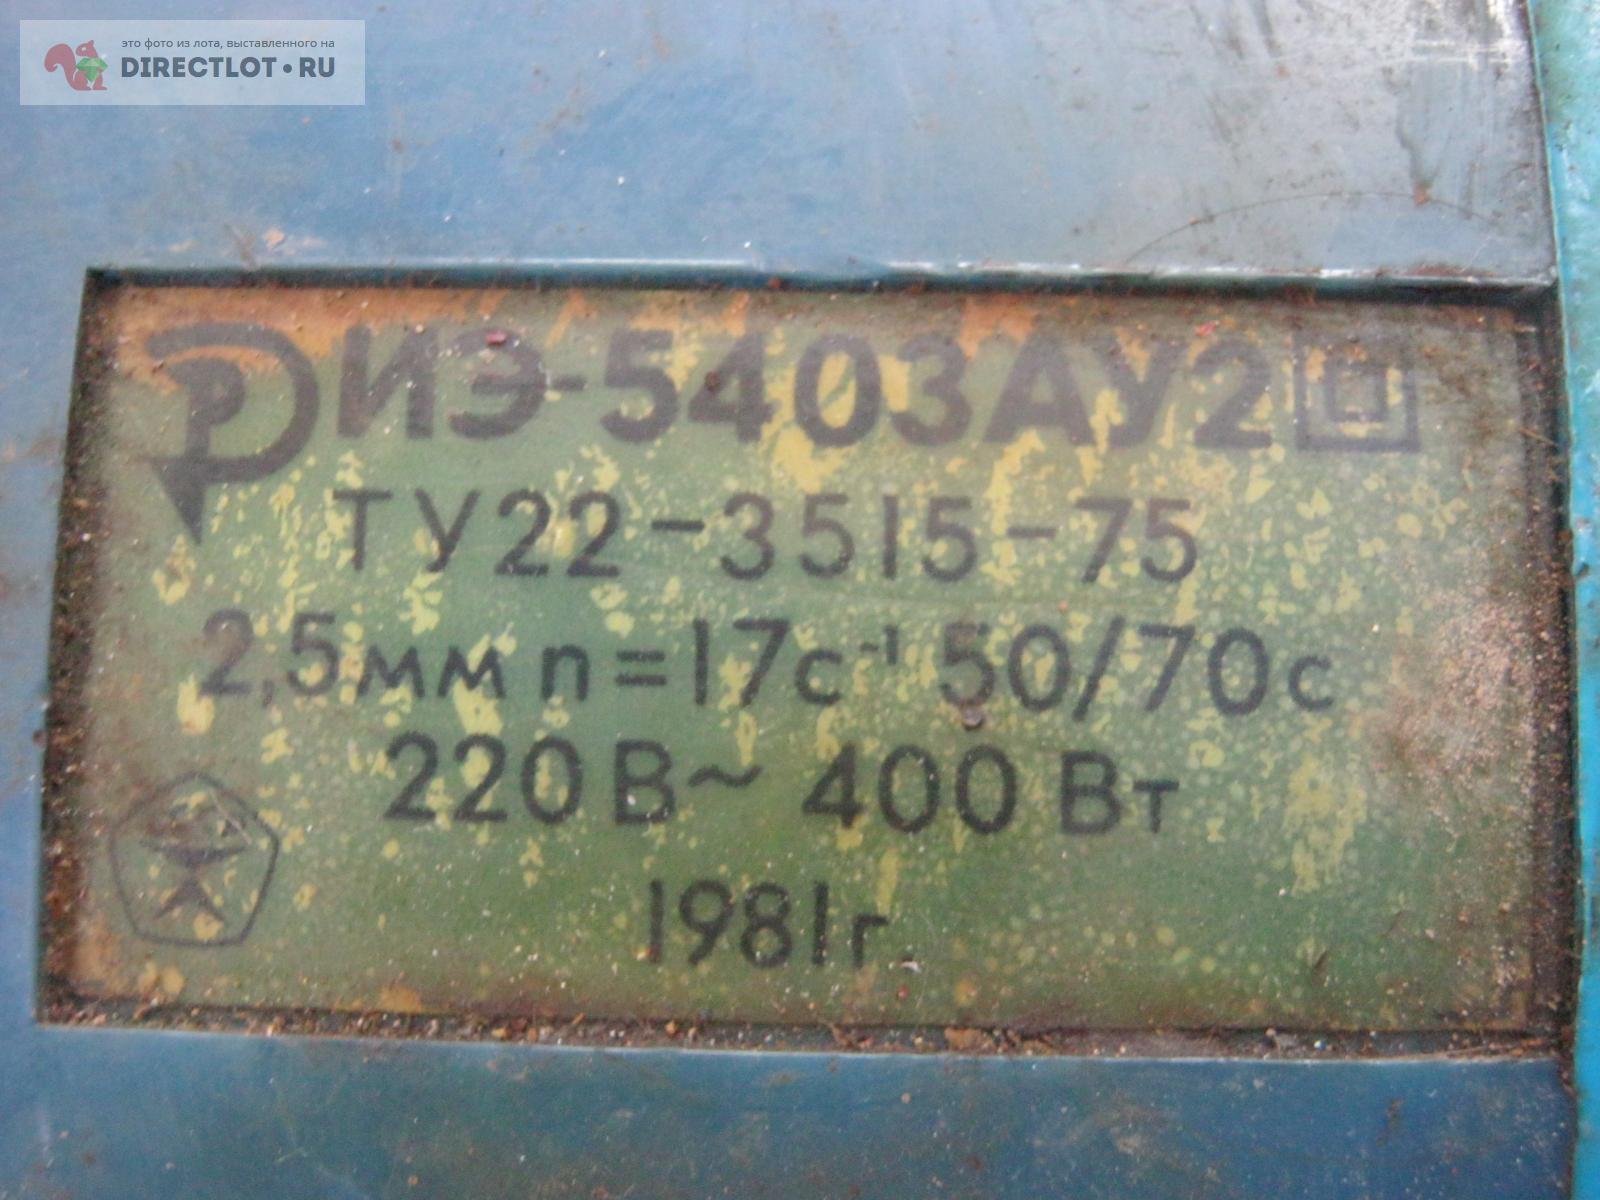  по металлу ЭИ 5403.  в Симферополе цена 3000 Р на .